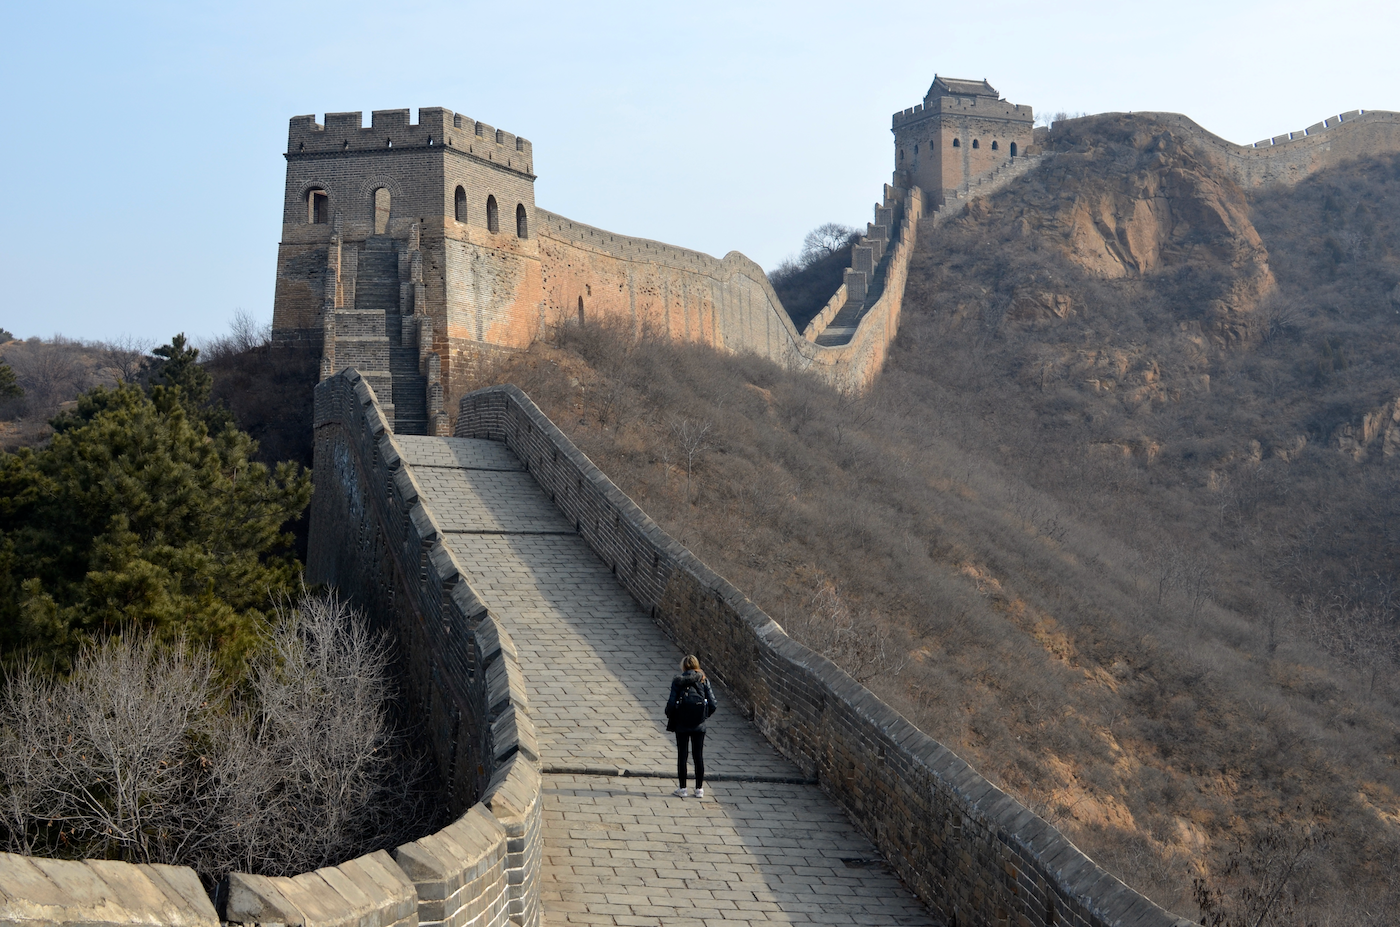 Great Wall of China at Jinshanling